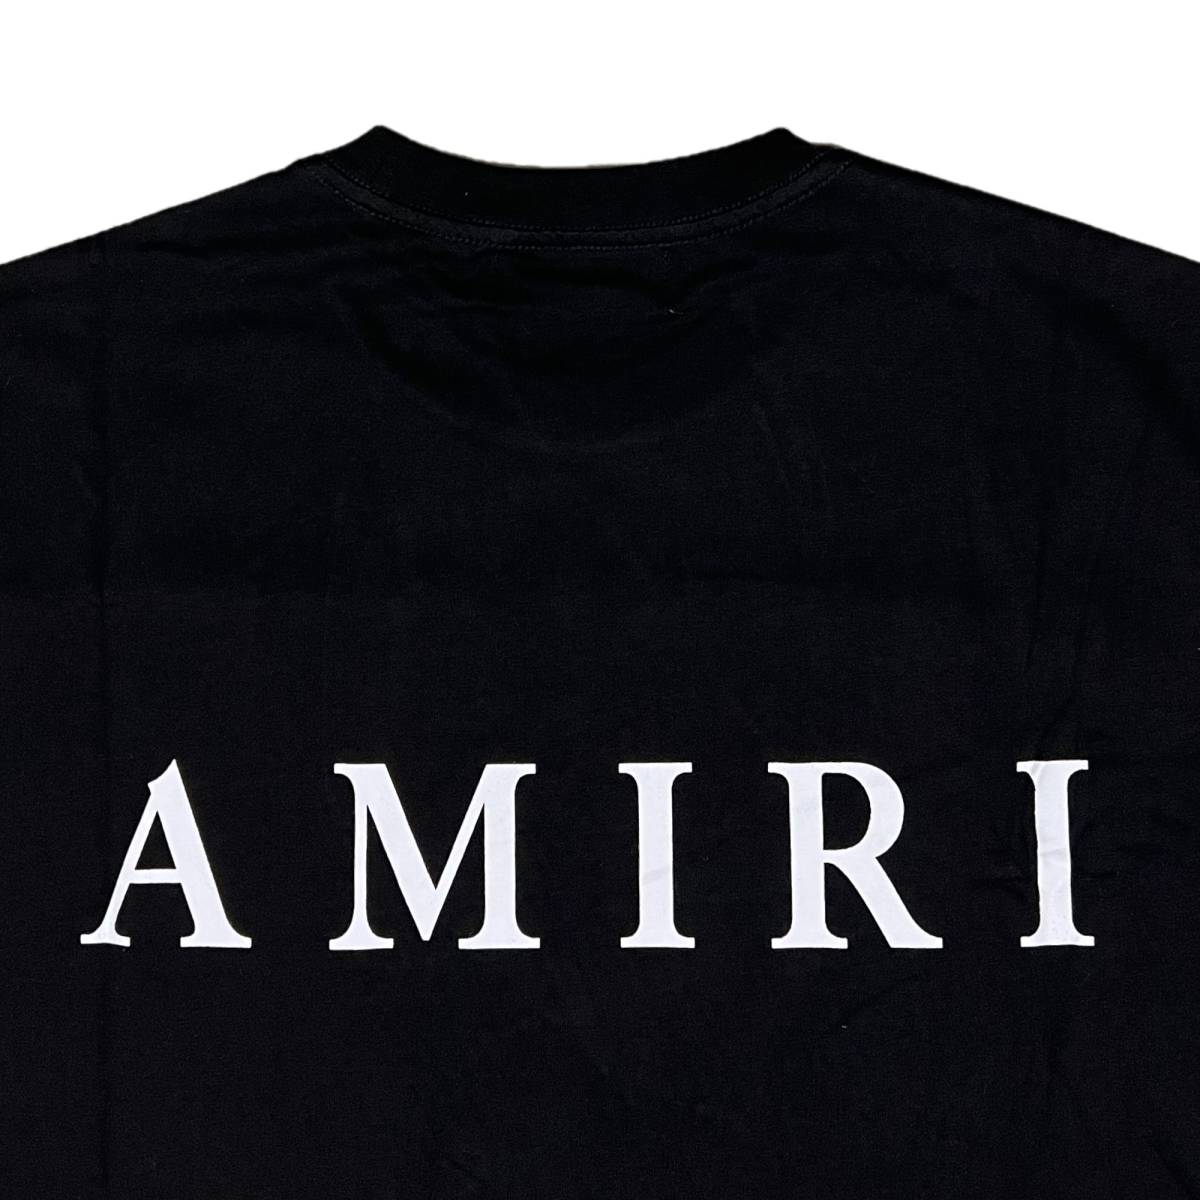 並行輸入品] AMIRI アミリ MA CORE ロゴ 半袖 Tシャツ (ブラック) (XL 